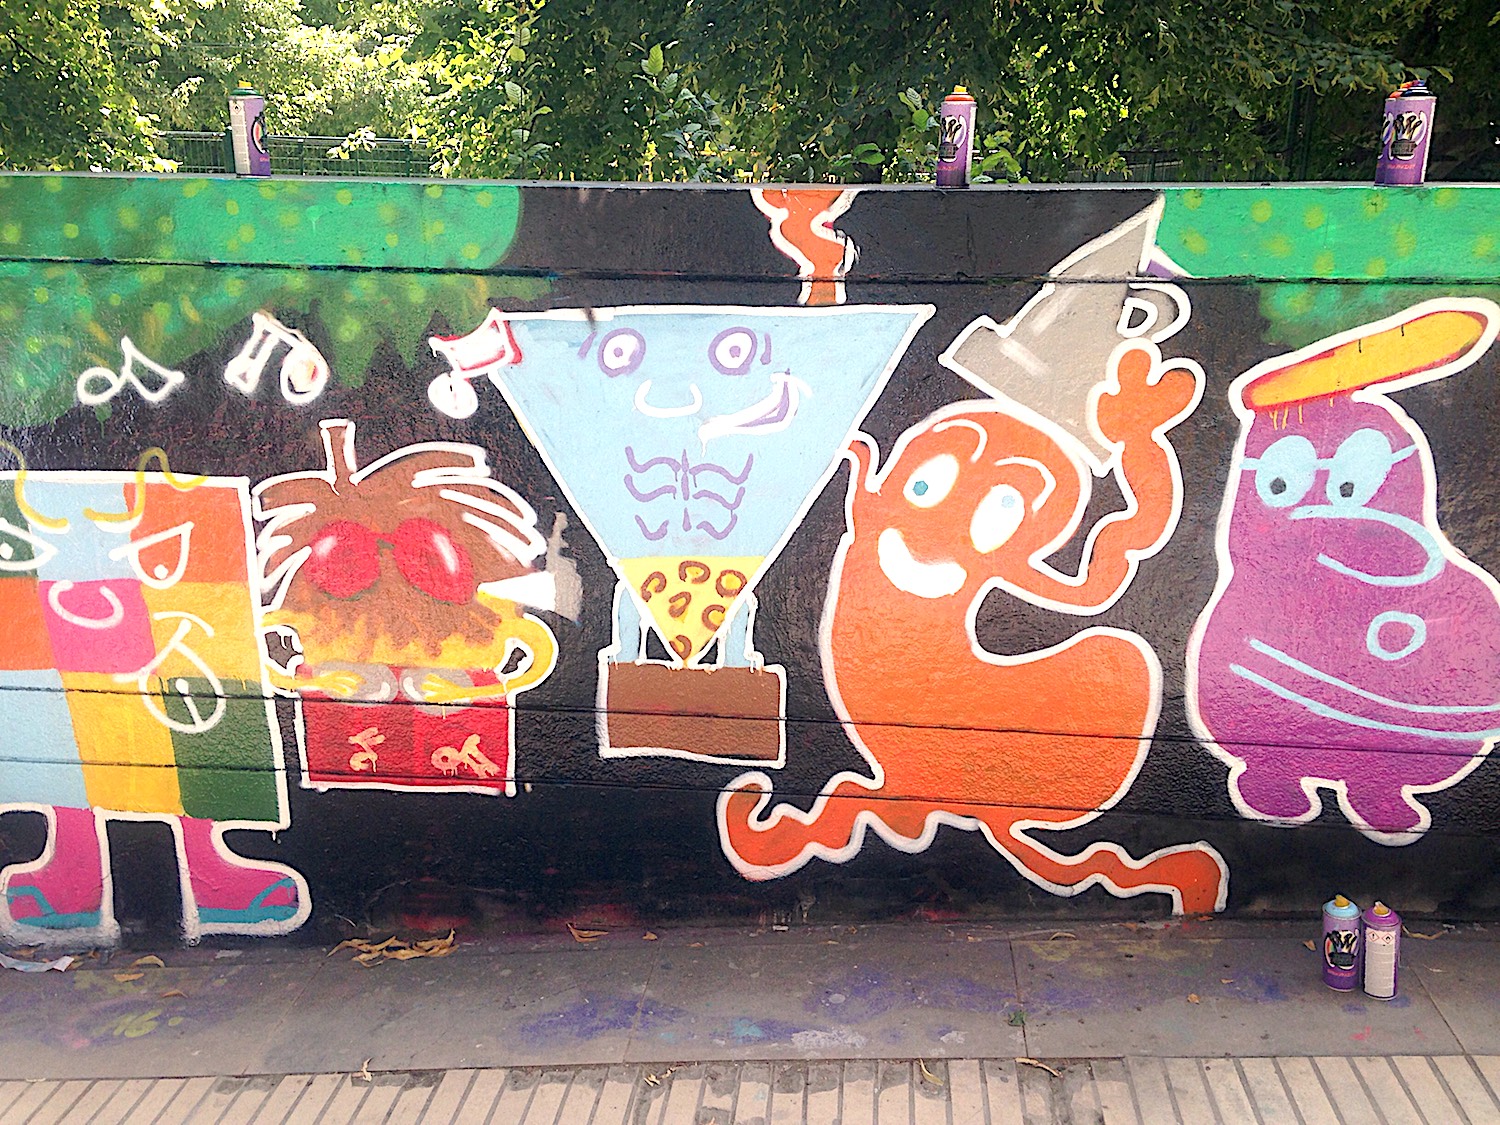 la-coutch-blog-lifestyle-coutch-coeur-13-atelier-grafitti-mural-paris-bercy1